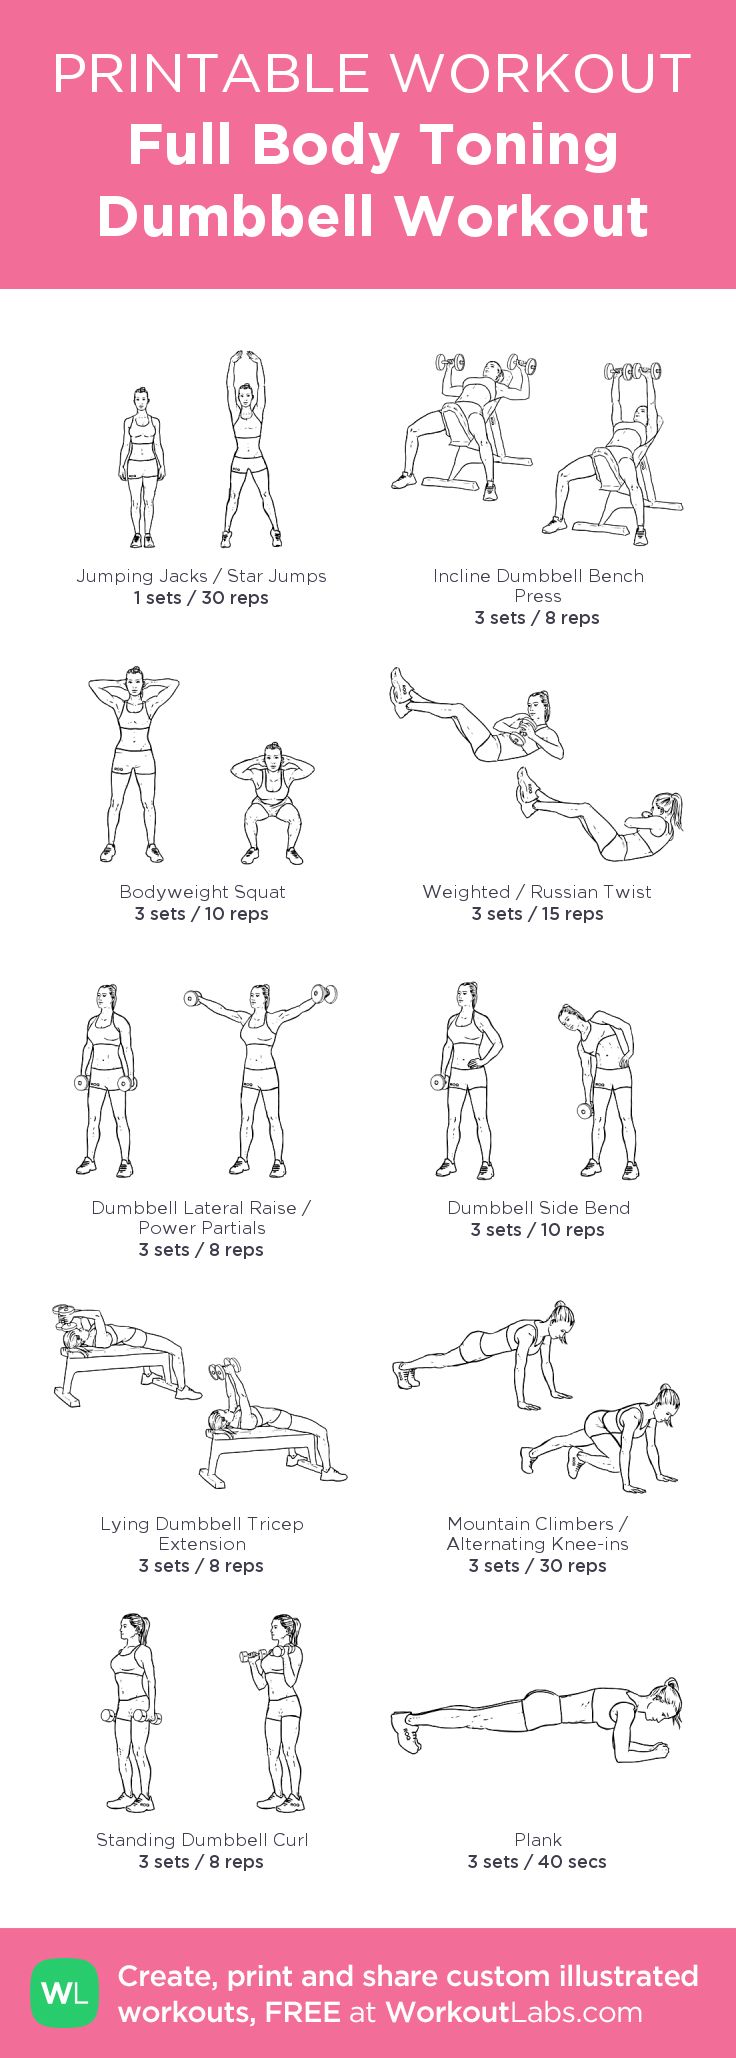 baywatch body workout pdf